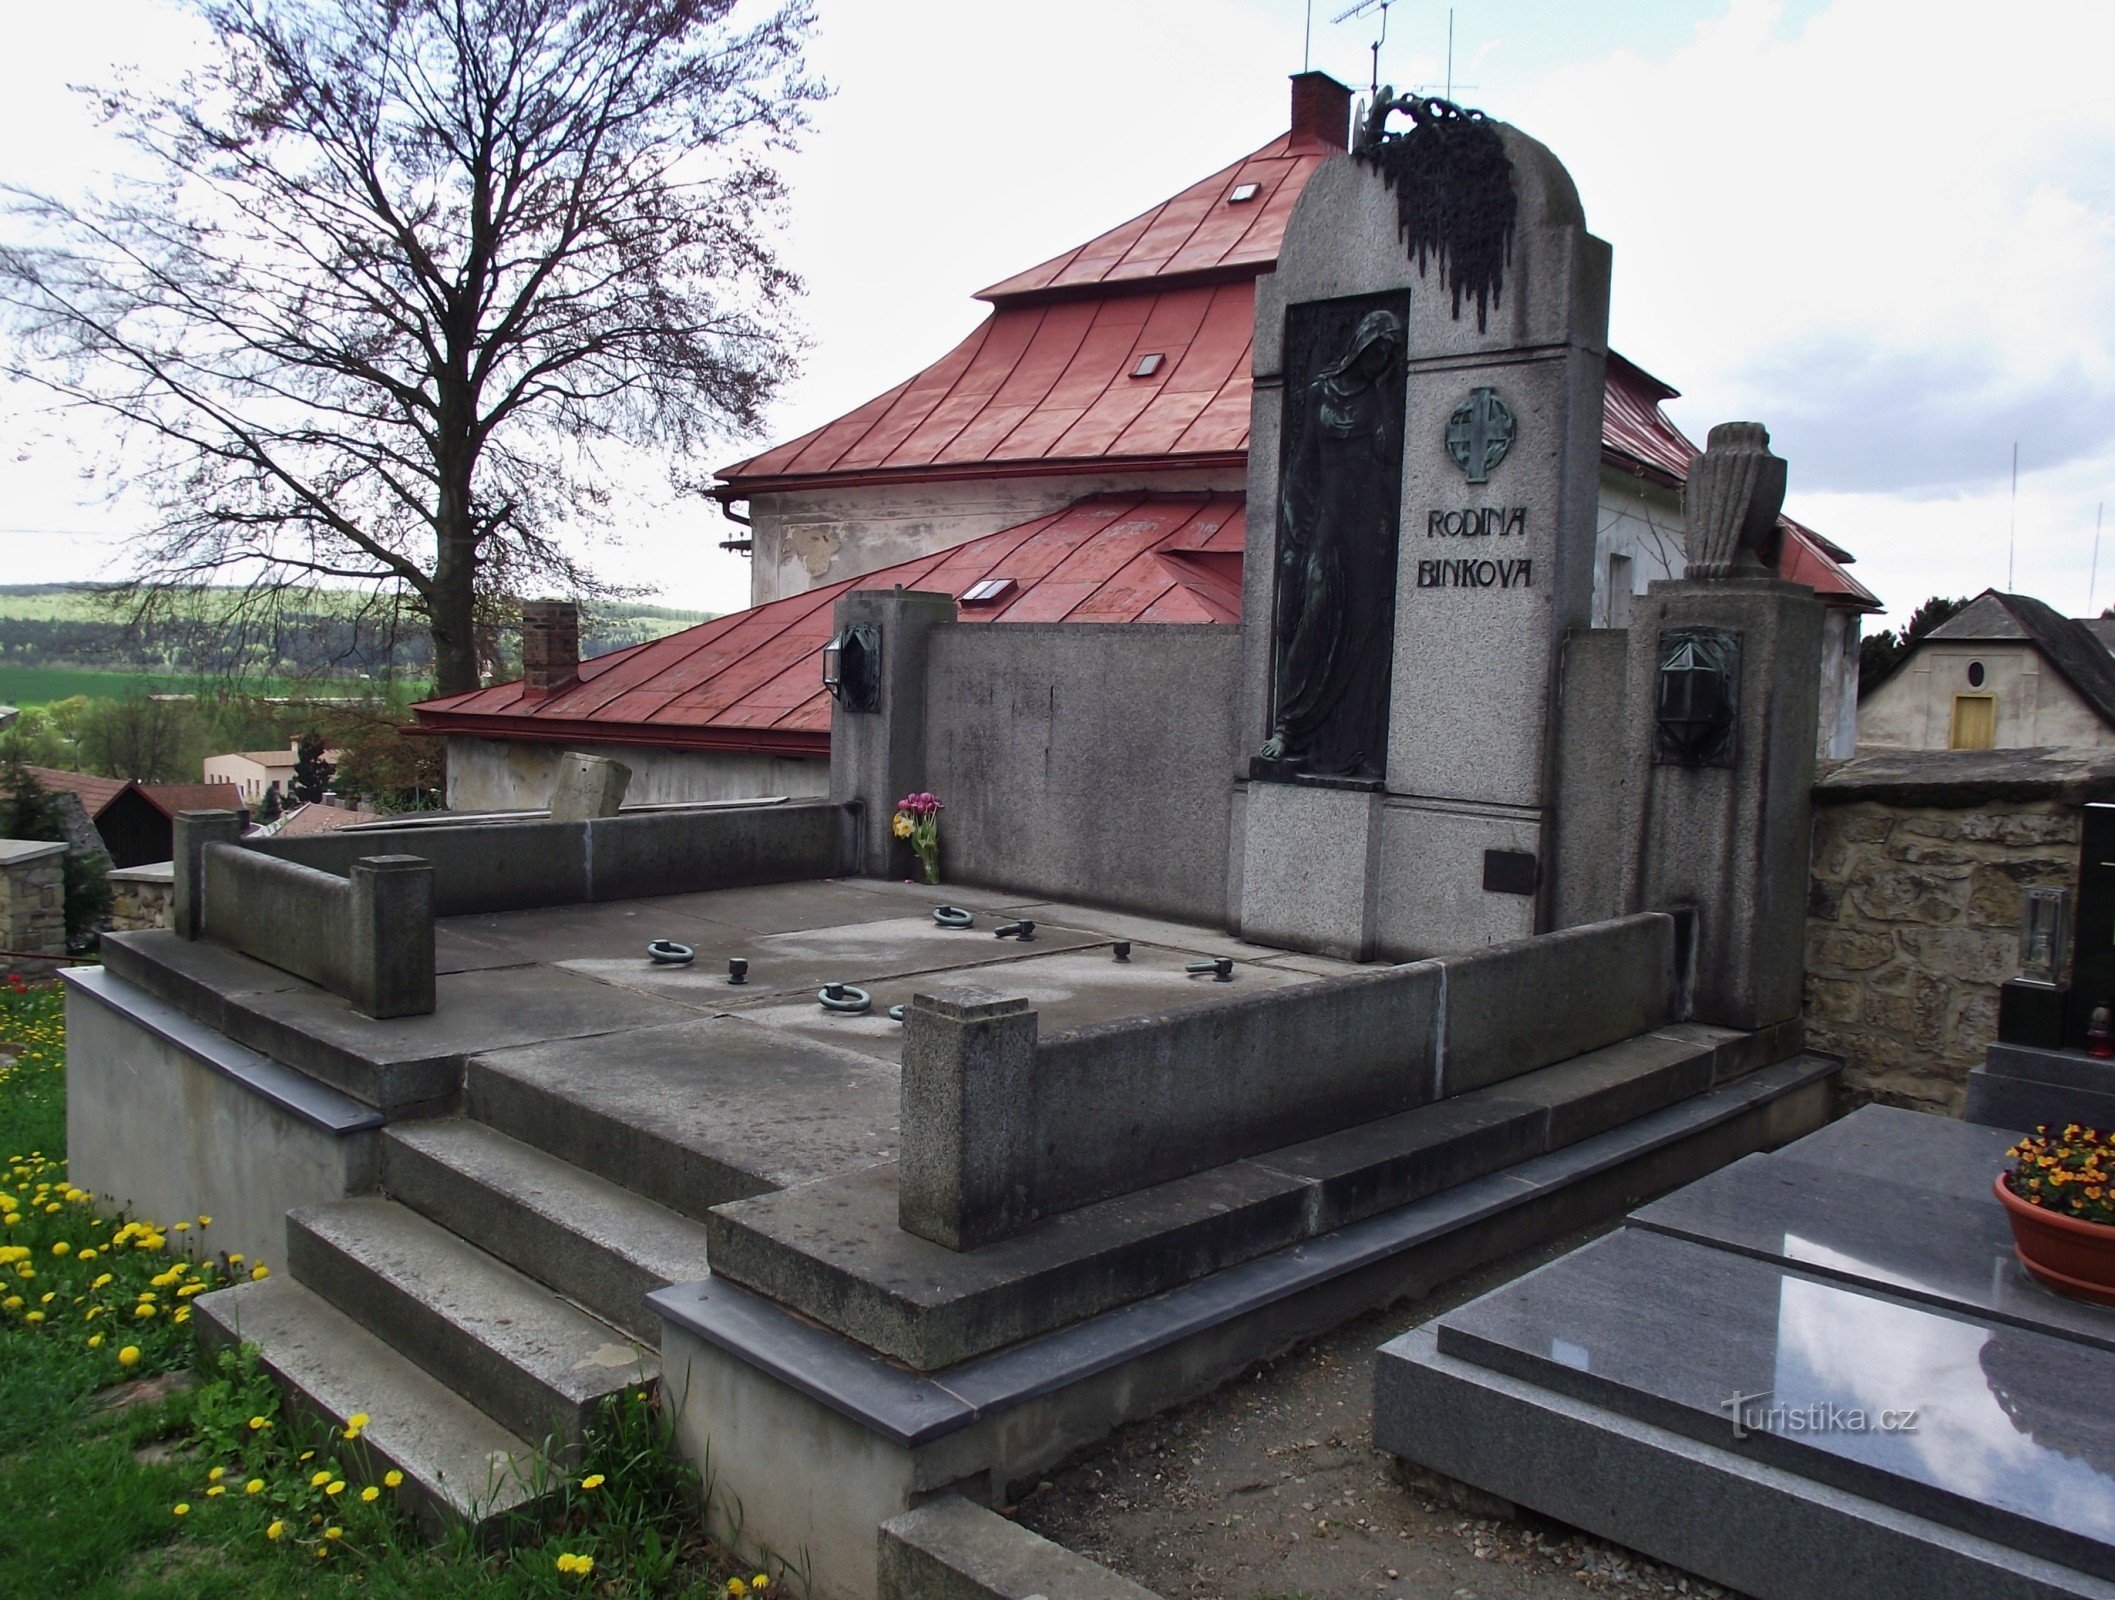 雕塑家 Jana Štursa 在教区长的背景下在宾克家族的坟墓上创作的雕塑